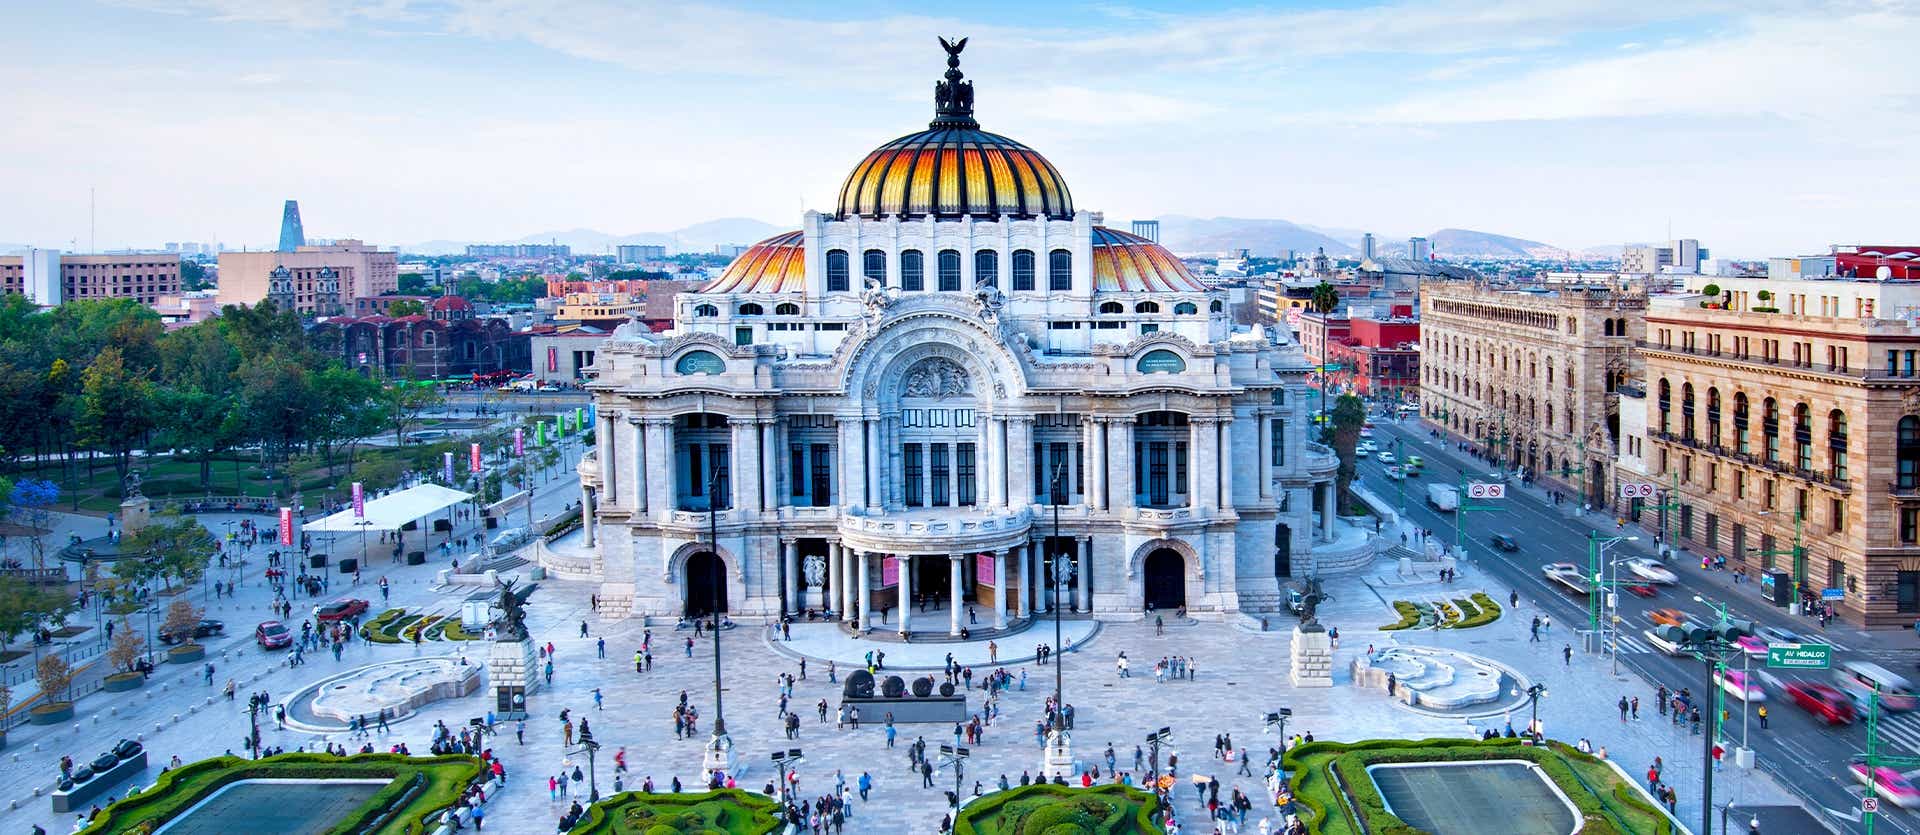 Fine Arts Palace <span class="iconos separador"></span> Mexico City